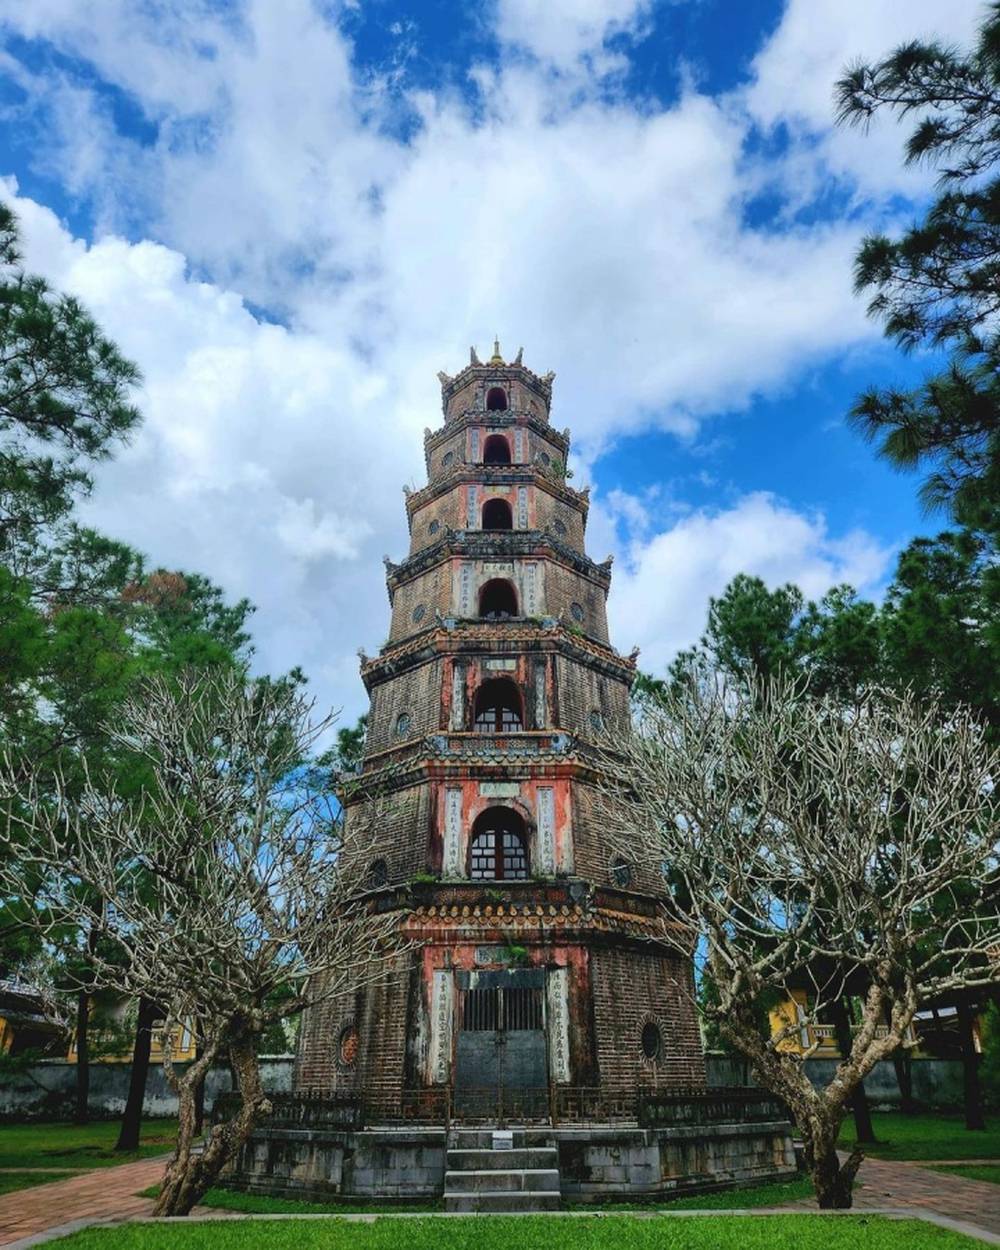 Dạo chơi khám phá ‘lời nguyền’ tình duyên ở ngôi chùa cổ linh thiêng nhất xứ Huế